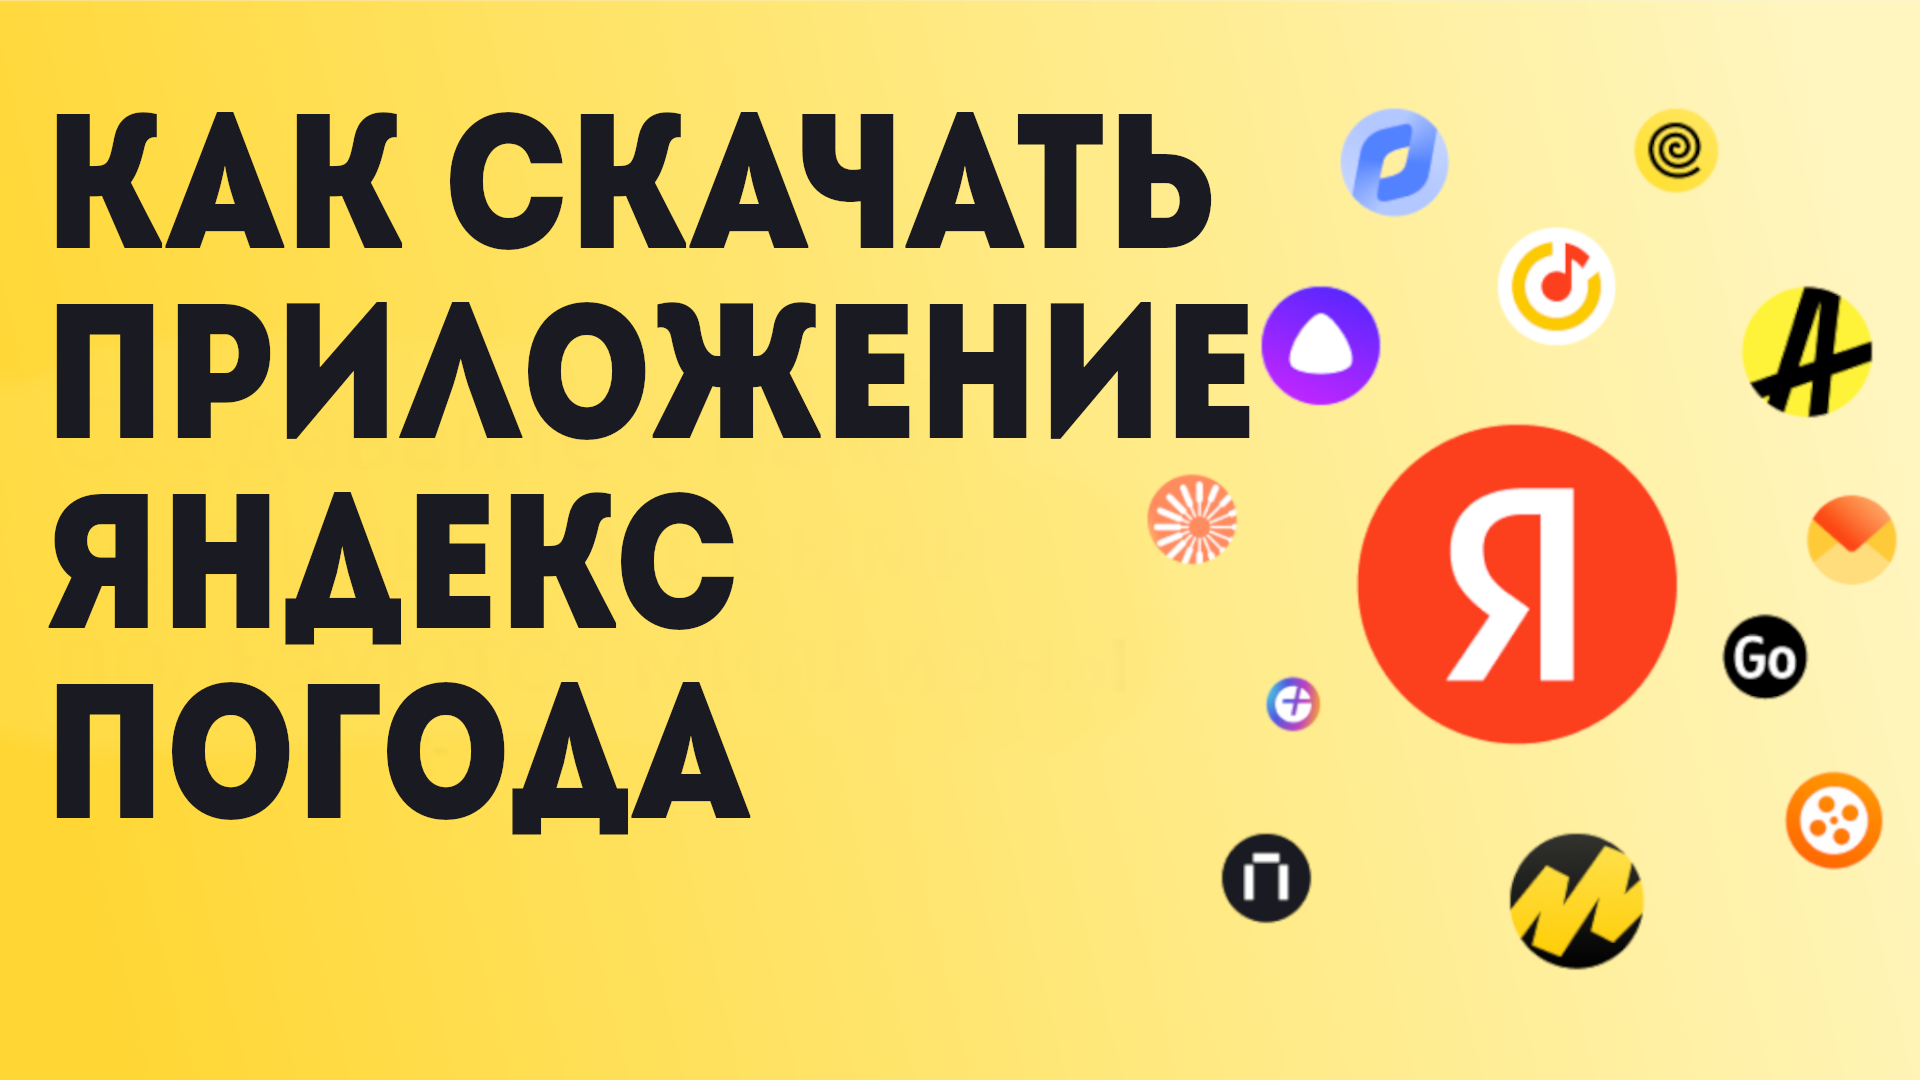 Как Скачать приложение Яндекс Погода